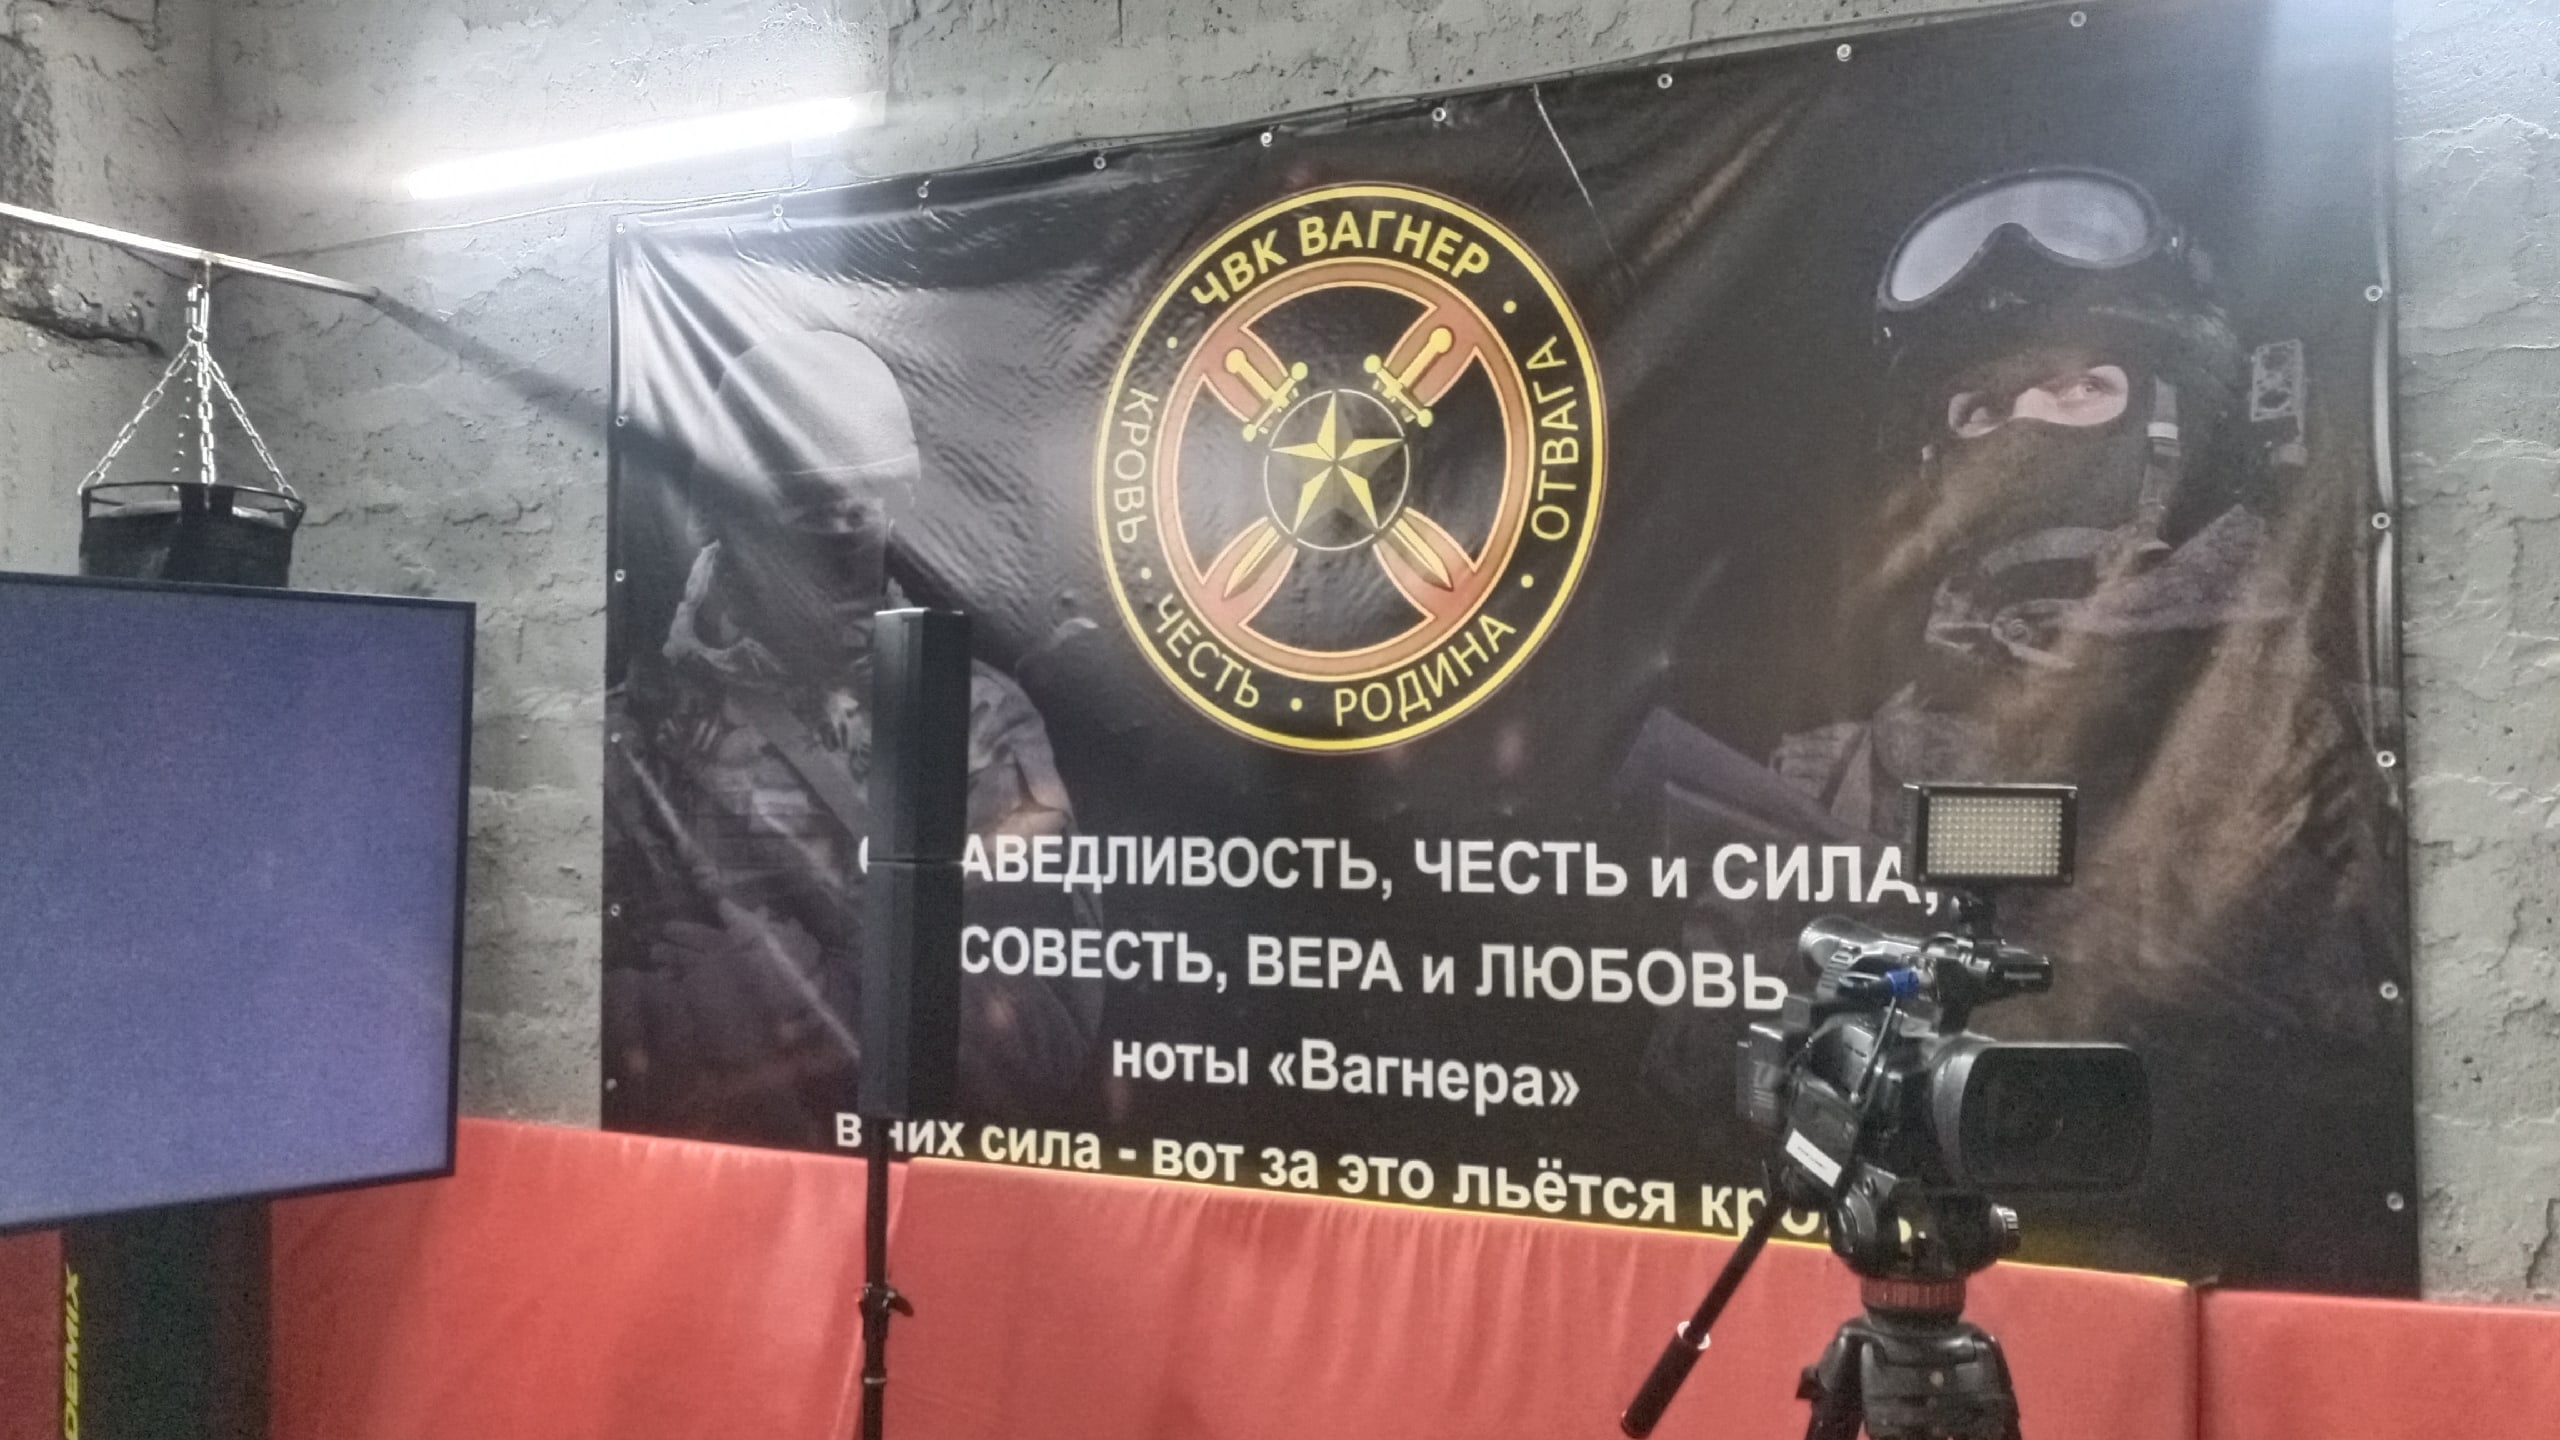 Пригожин обвинял некоторых личностей в обстреле лагеря ЧВК «Вагнер» 